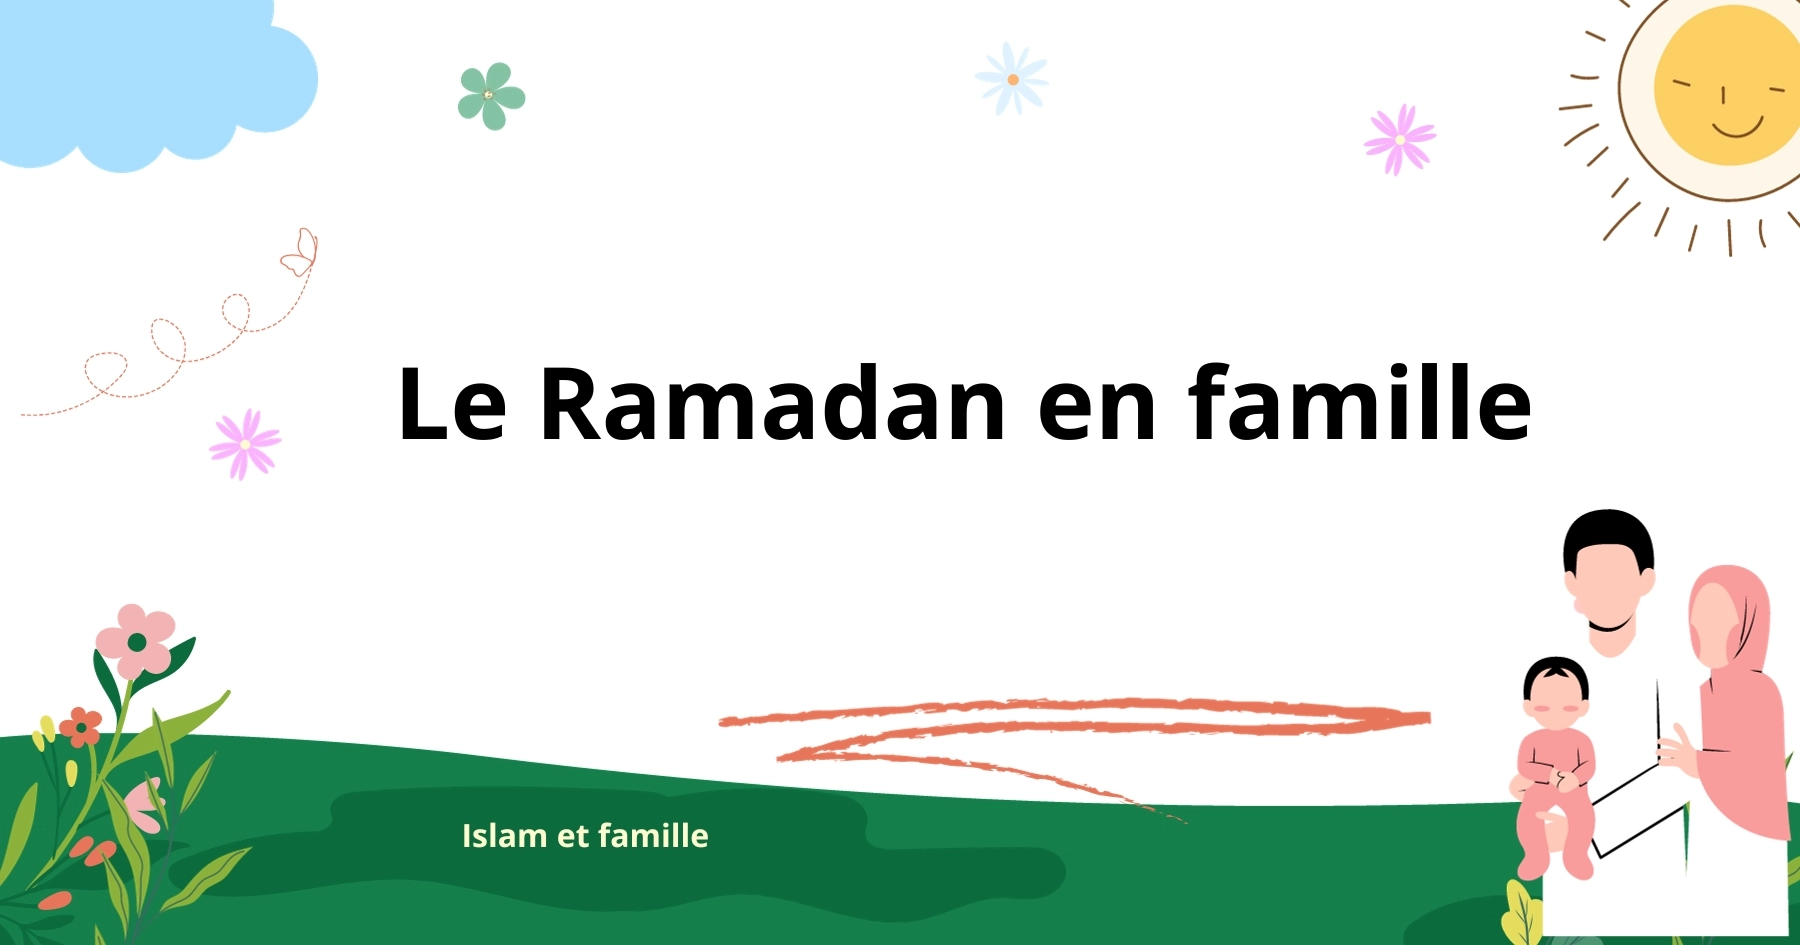 Le Ramadan en famille